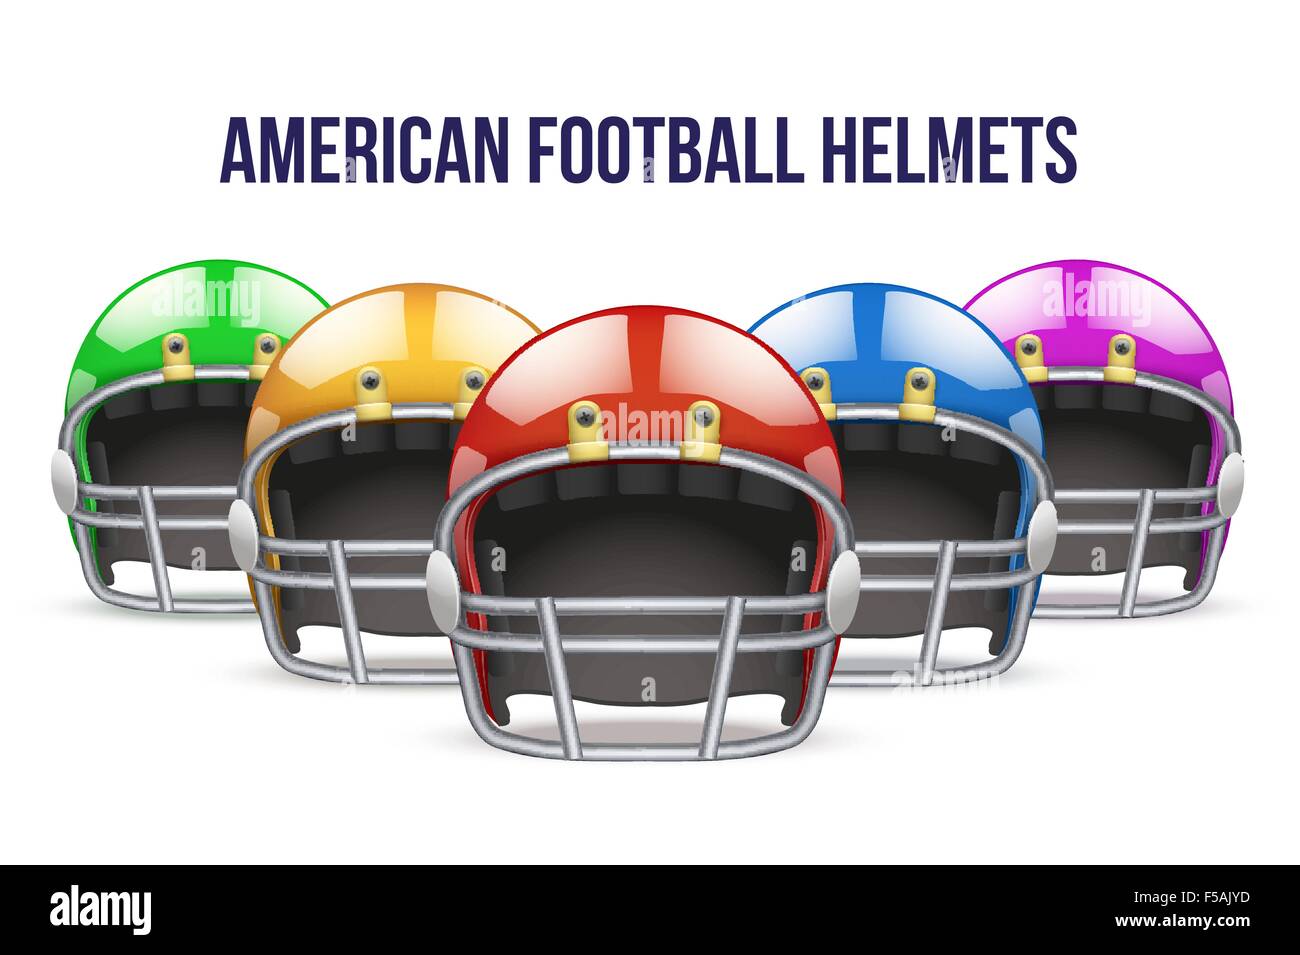 Arizona cardinals helmet Stock Vector Images - Alamy